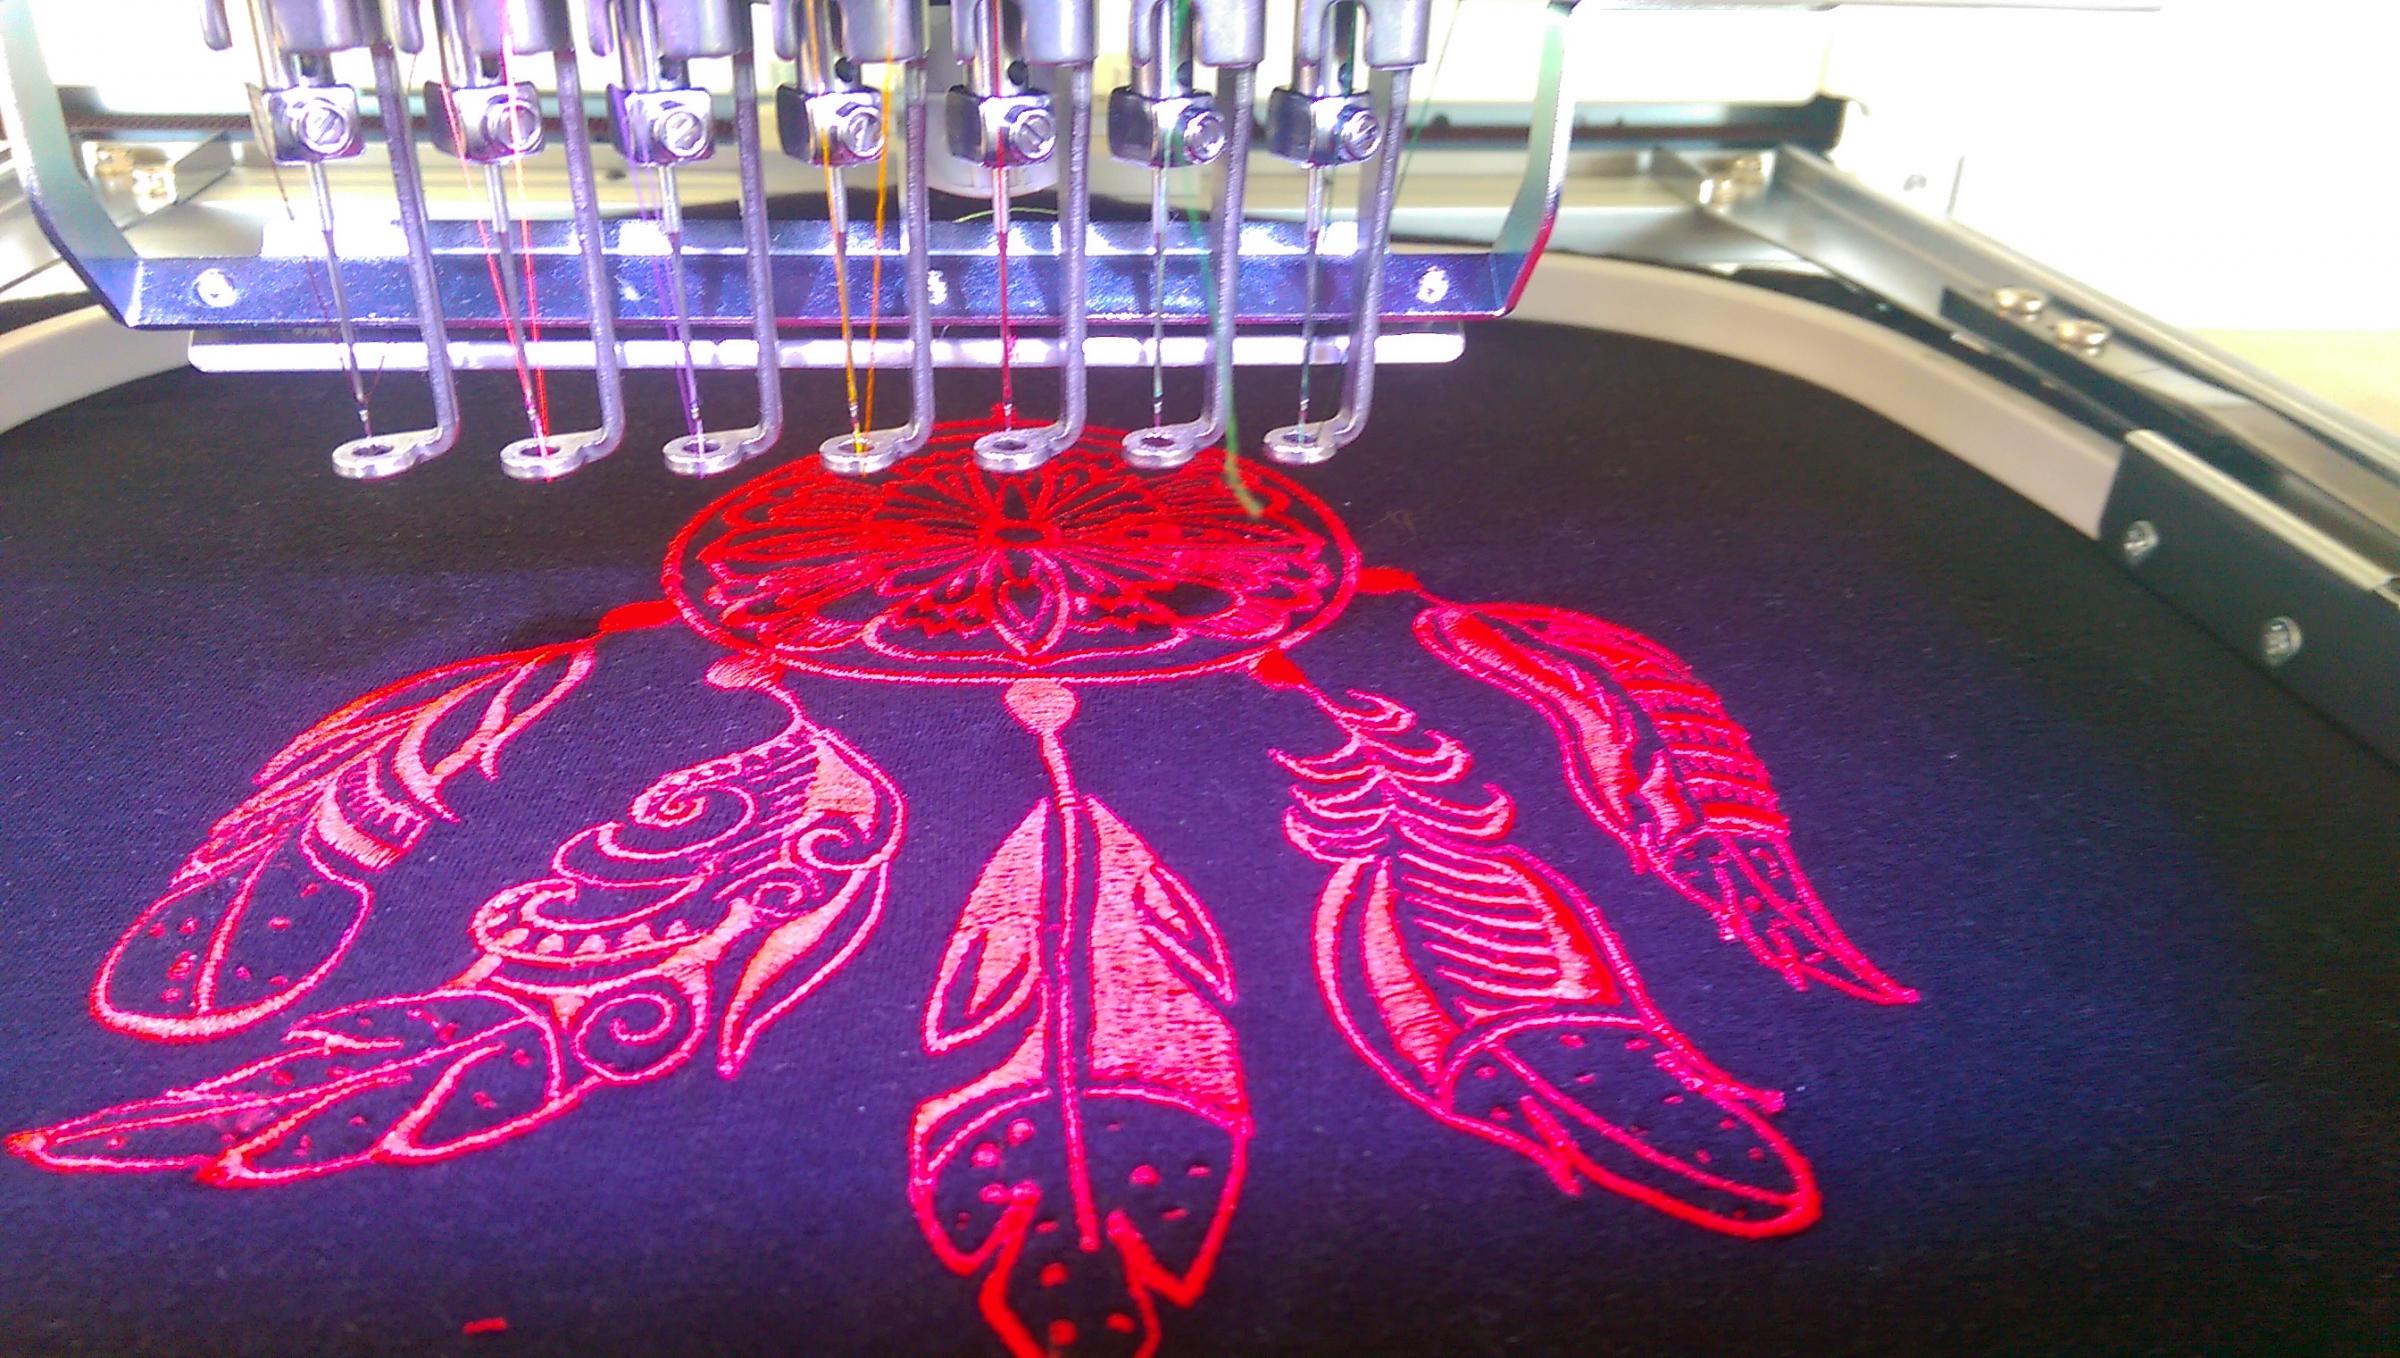 Dreamcatcher embroidery in hoop